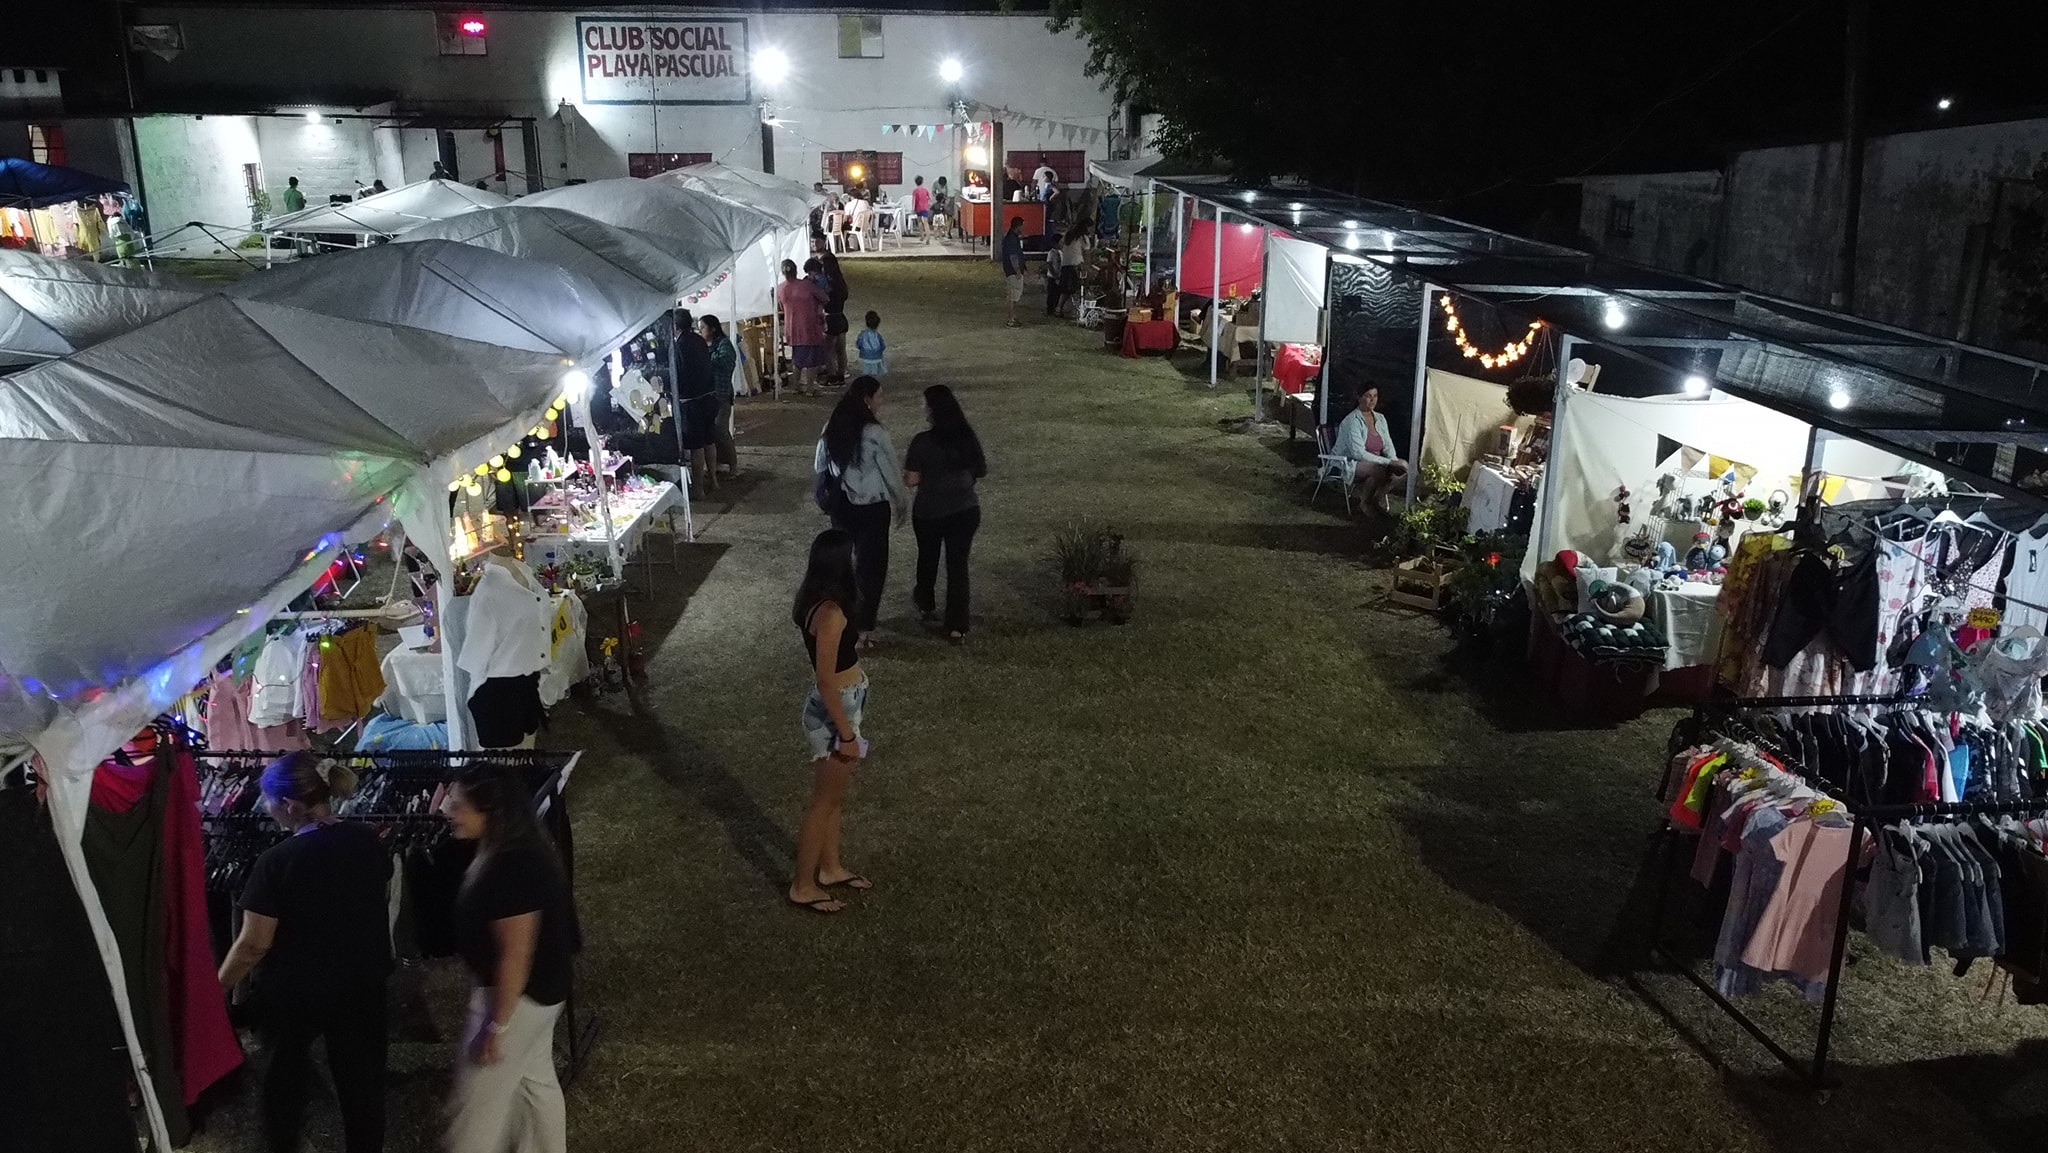 Feria nocturna se realiza durante esta semana en el Club Social Playa Pascual